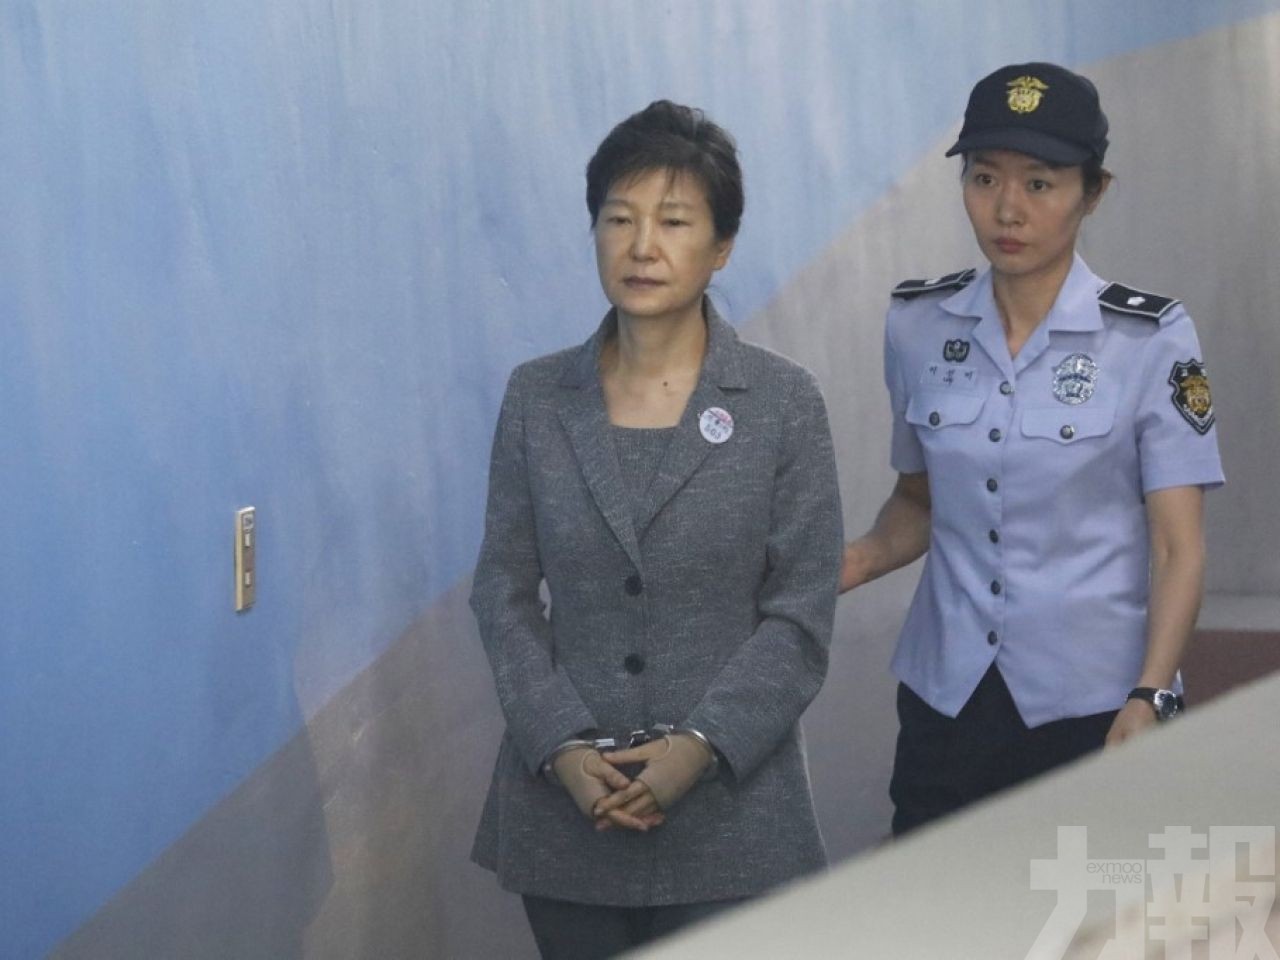 韓國大法院裁定發還重審